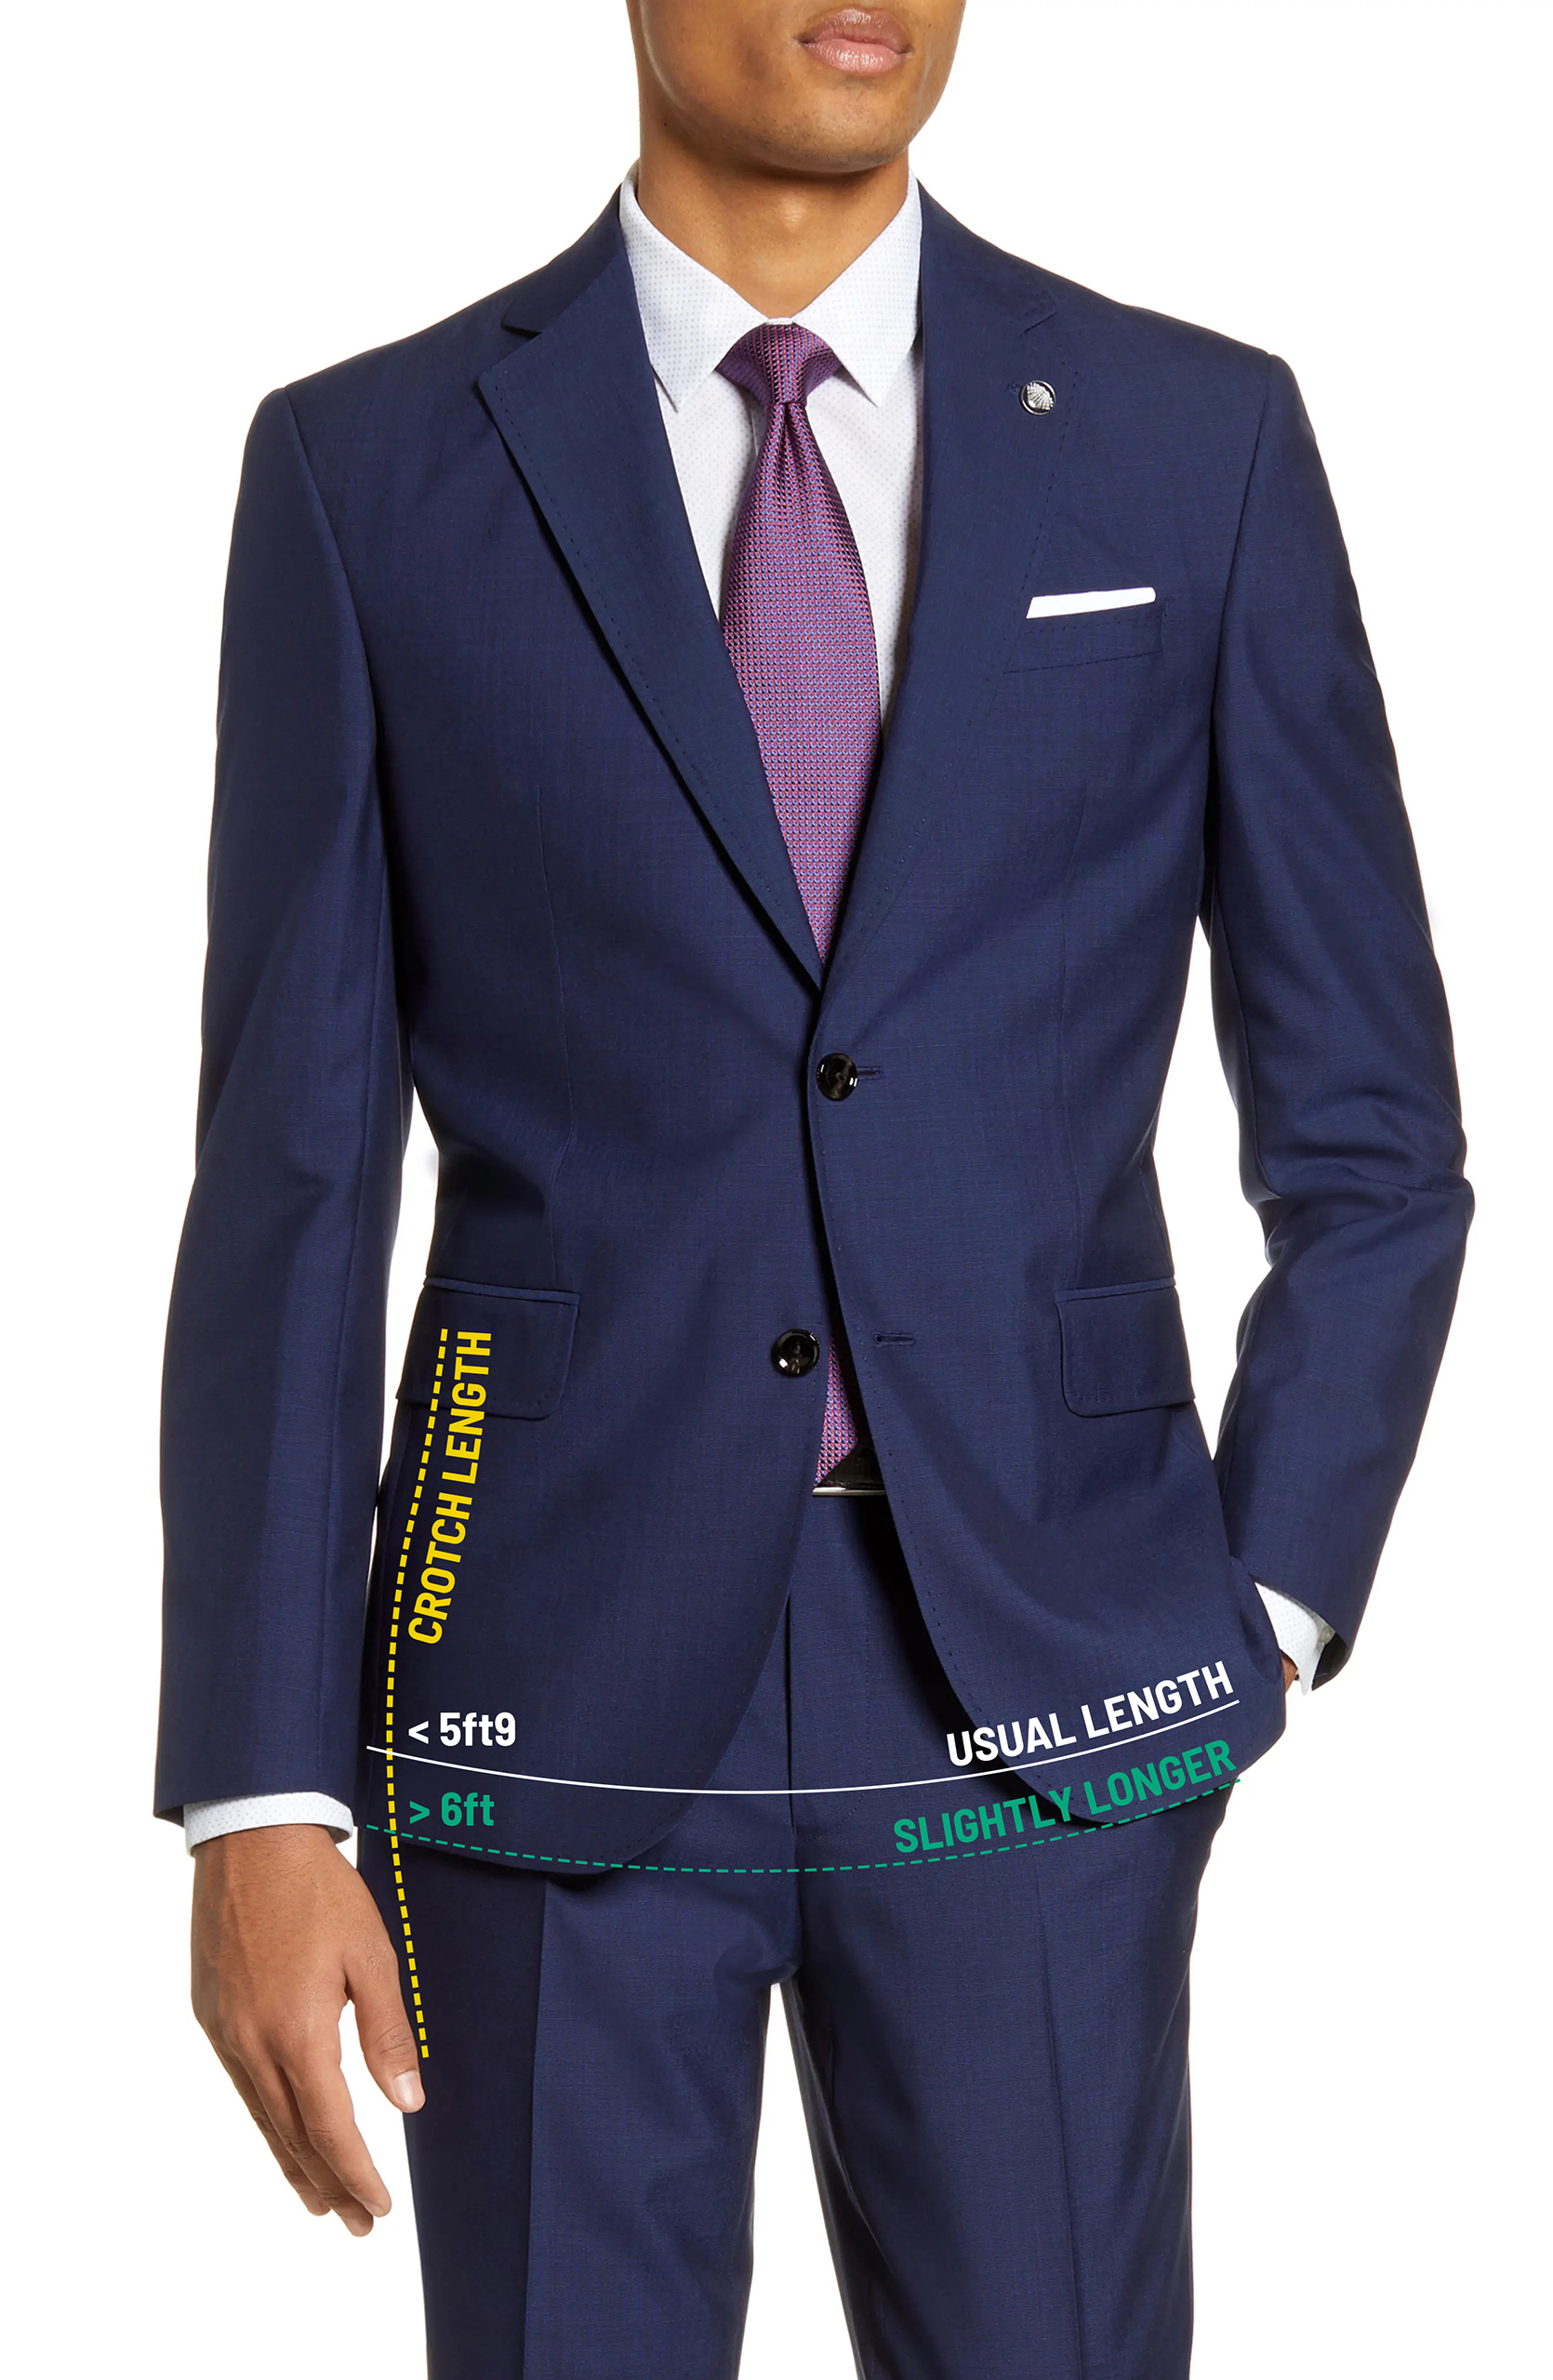 How should a suit fit: proper suit jacket length